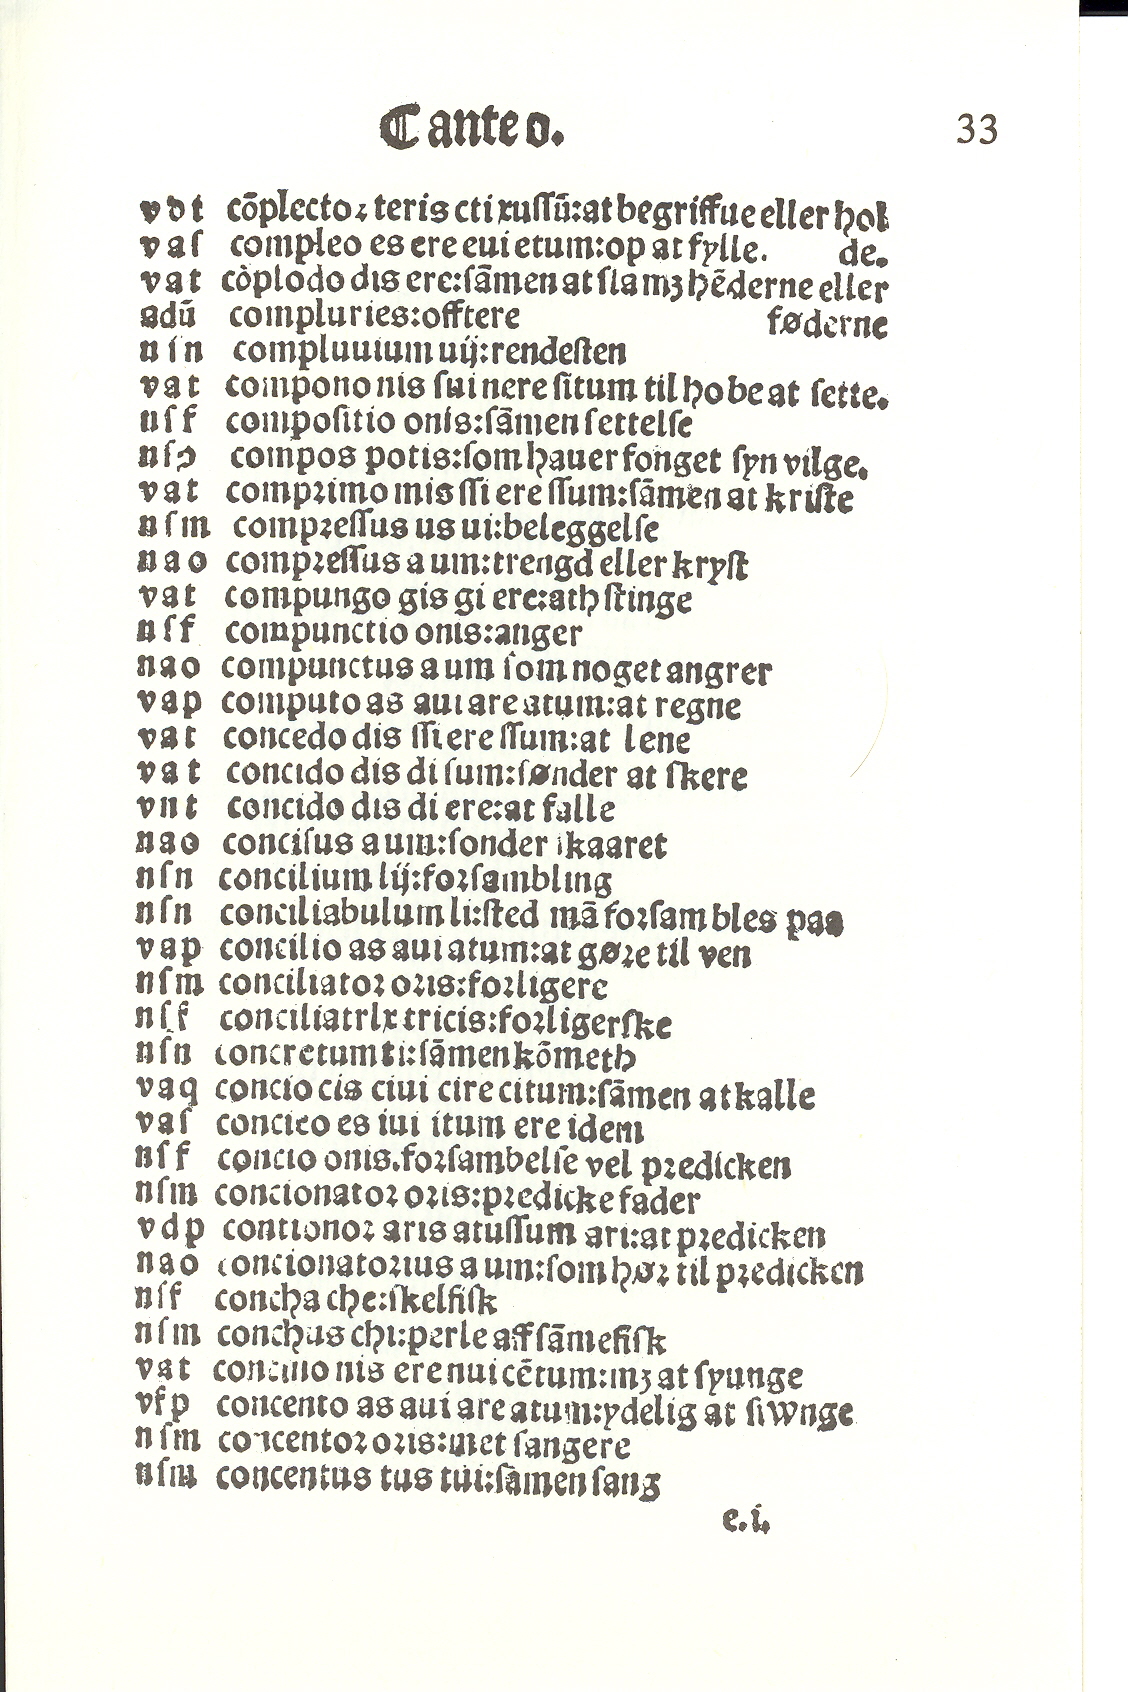 Pedersen 1510, Side: 63